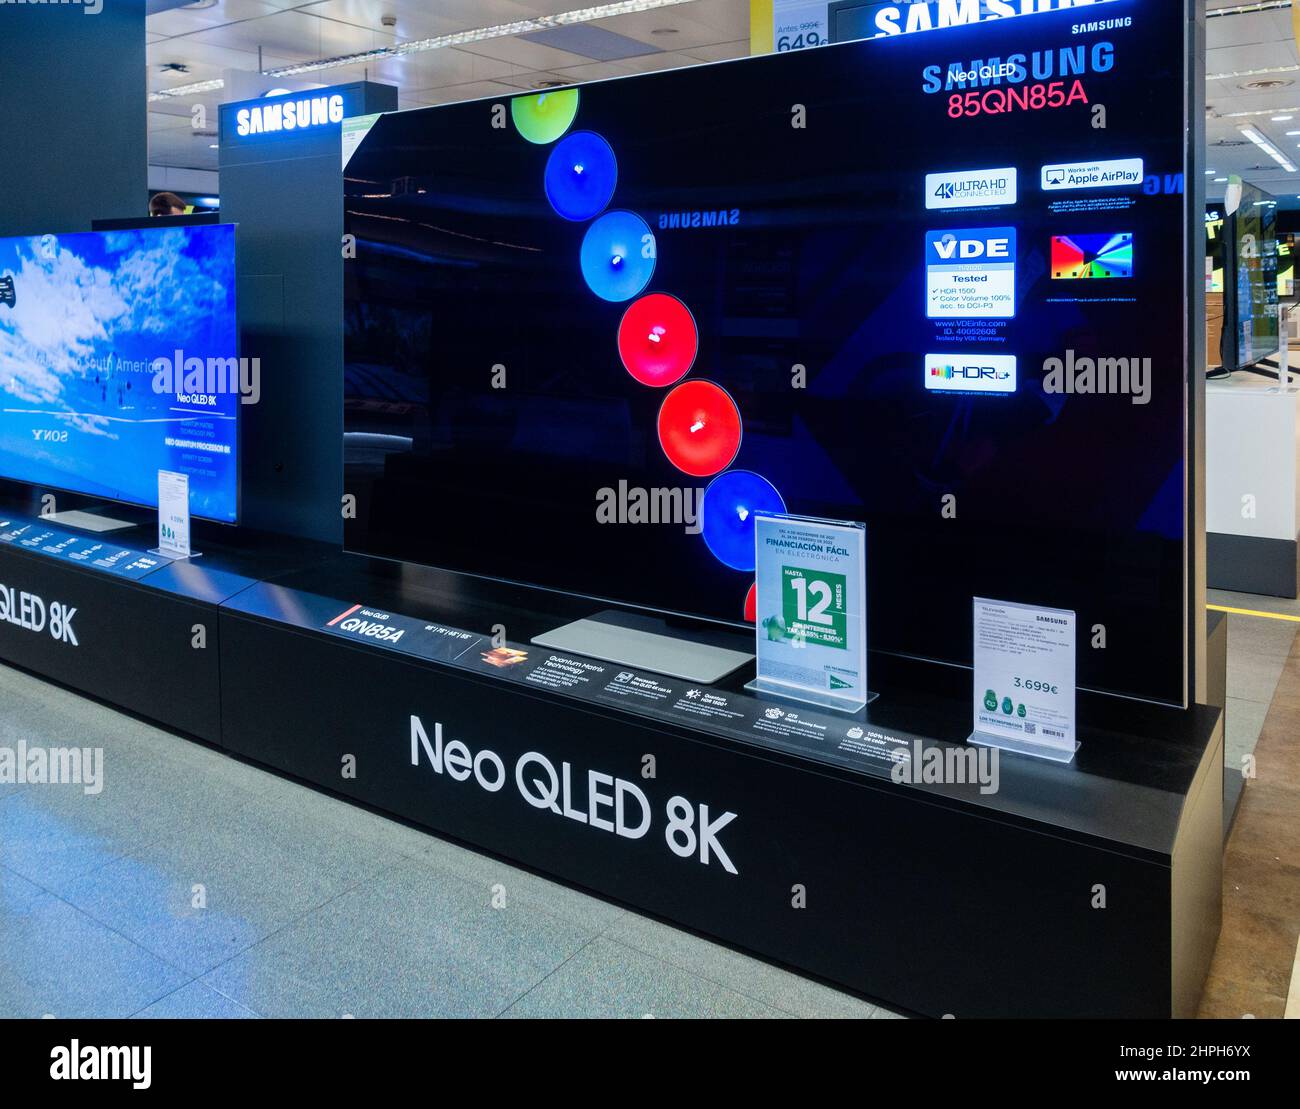 Téléviseur Samsung Neo QLED 8K haute définition, écran TV en magasin. Banque D'Images